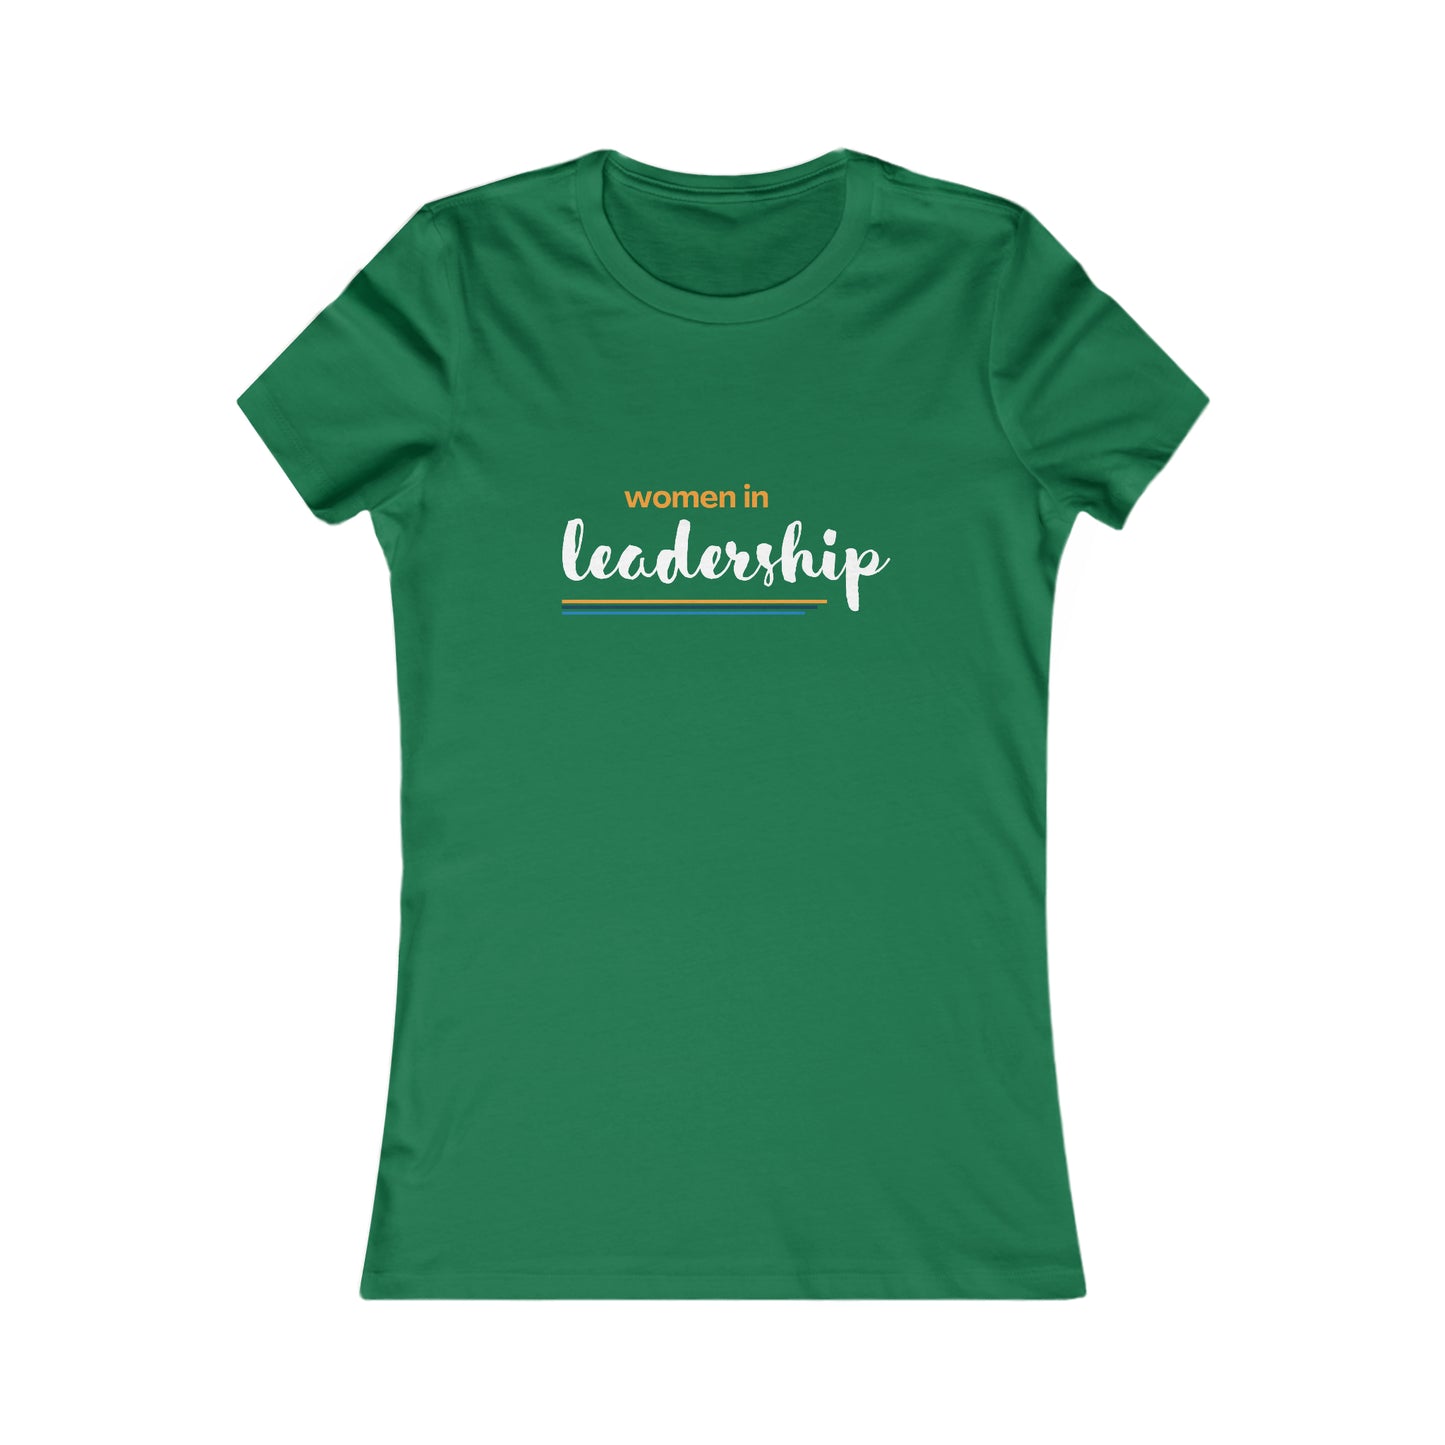 Women in Leadership Tee - Women's Fit